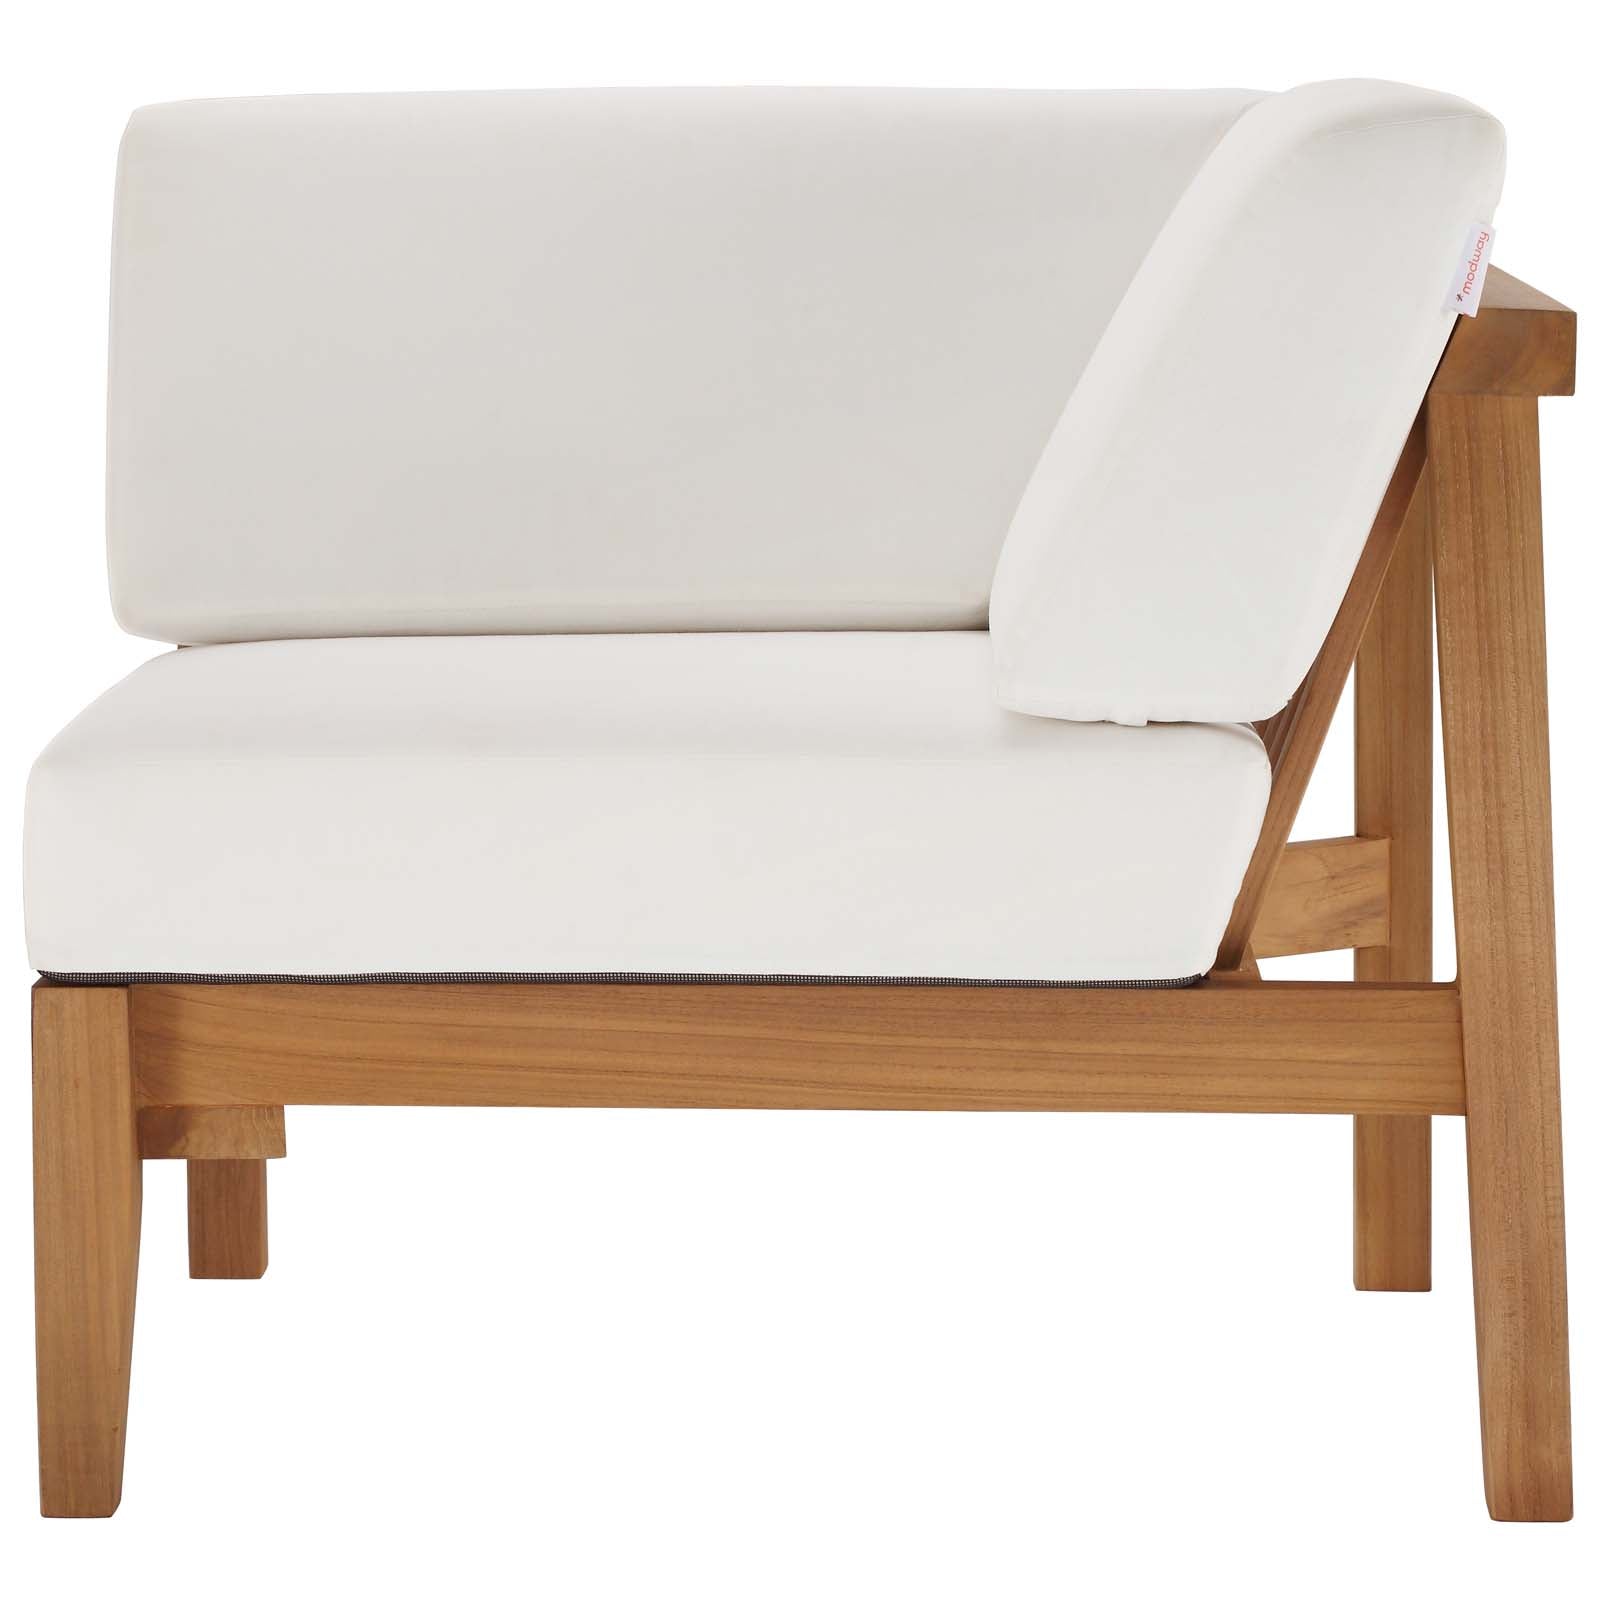 Modway - Bayport Outdoor Patio Teak Wood Corner Chair - EEI-4127